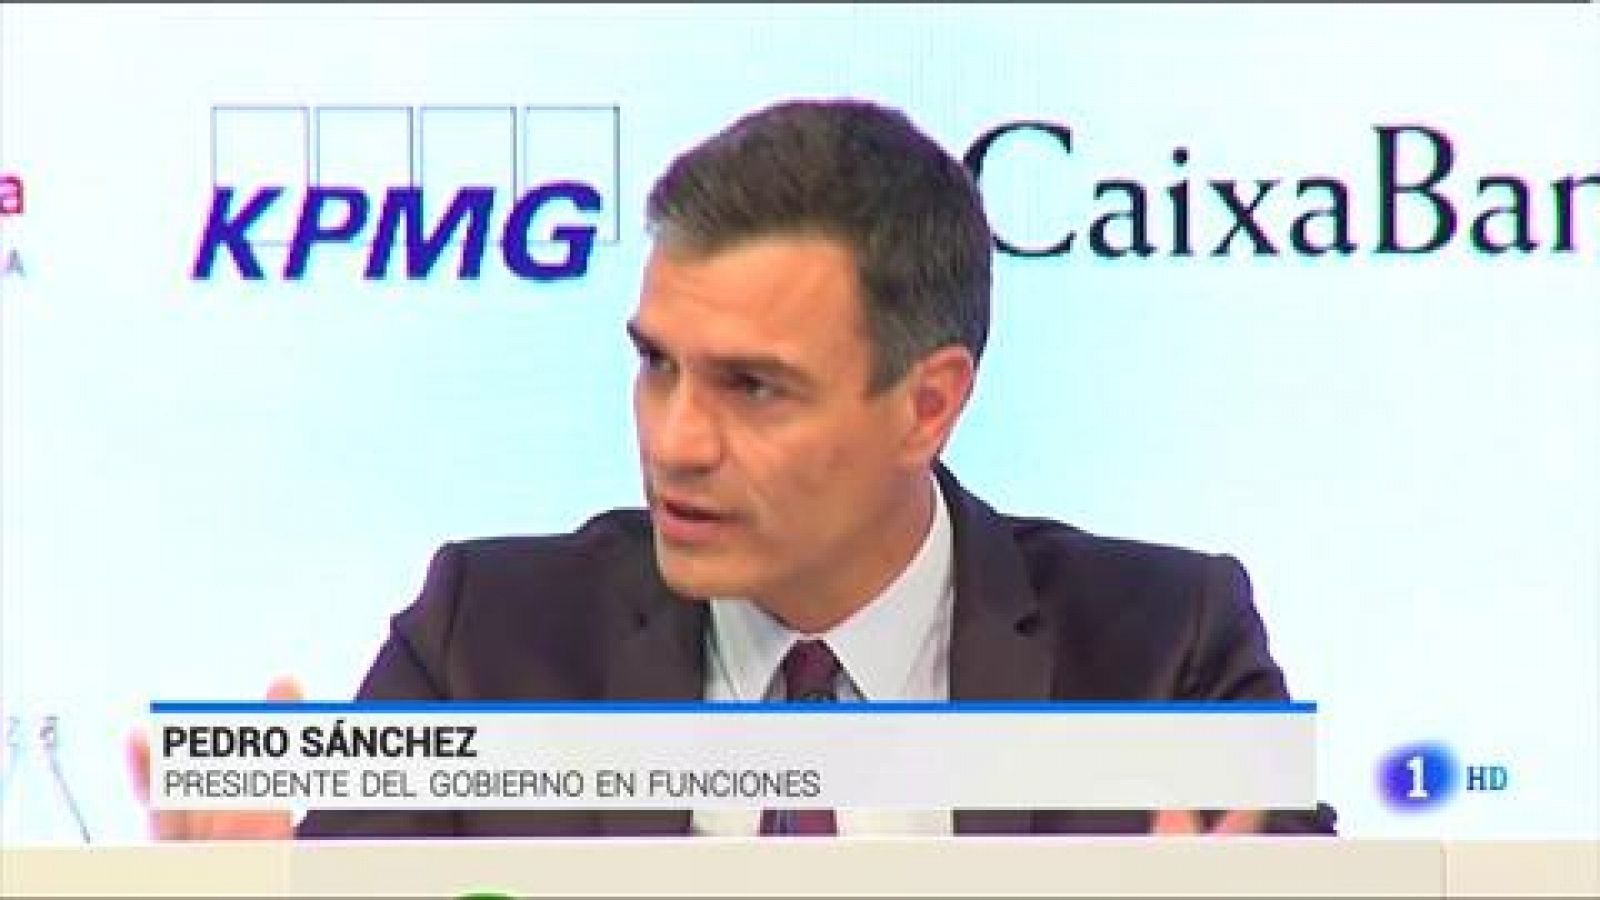 Círculo de Economía de Sitges: Pedro Sánchez hace un llamamiento para "aunar fuerzas" e "impulsar una gran agenda del cambio"